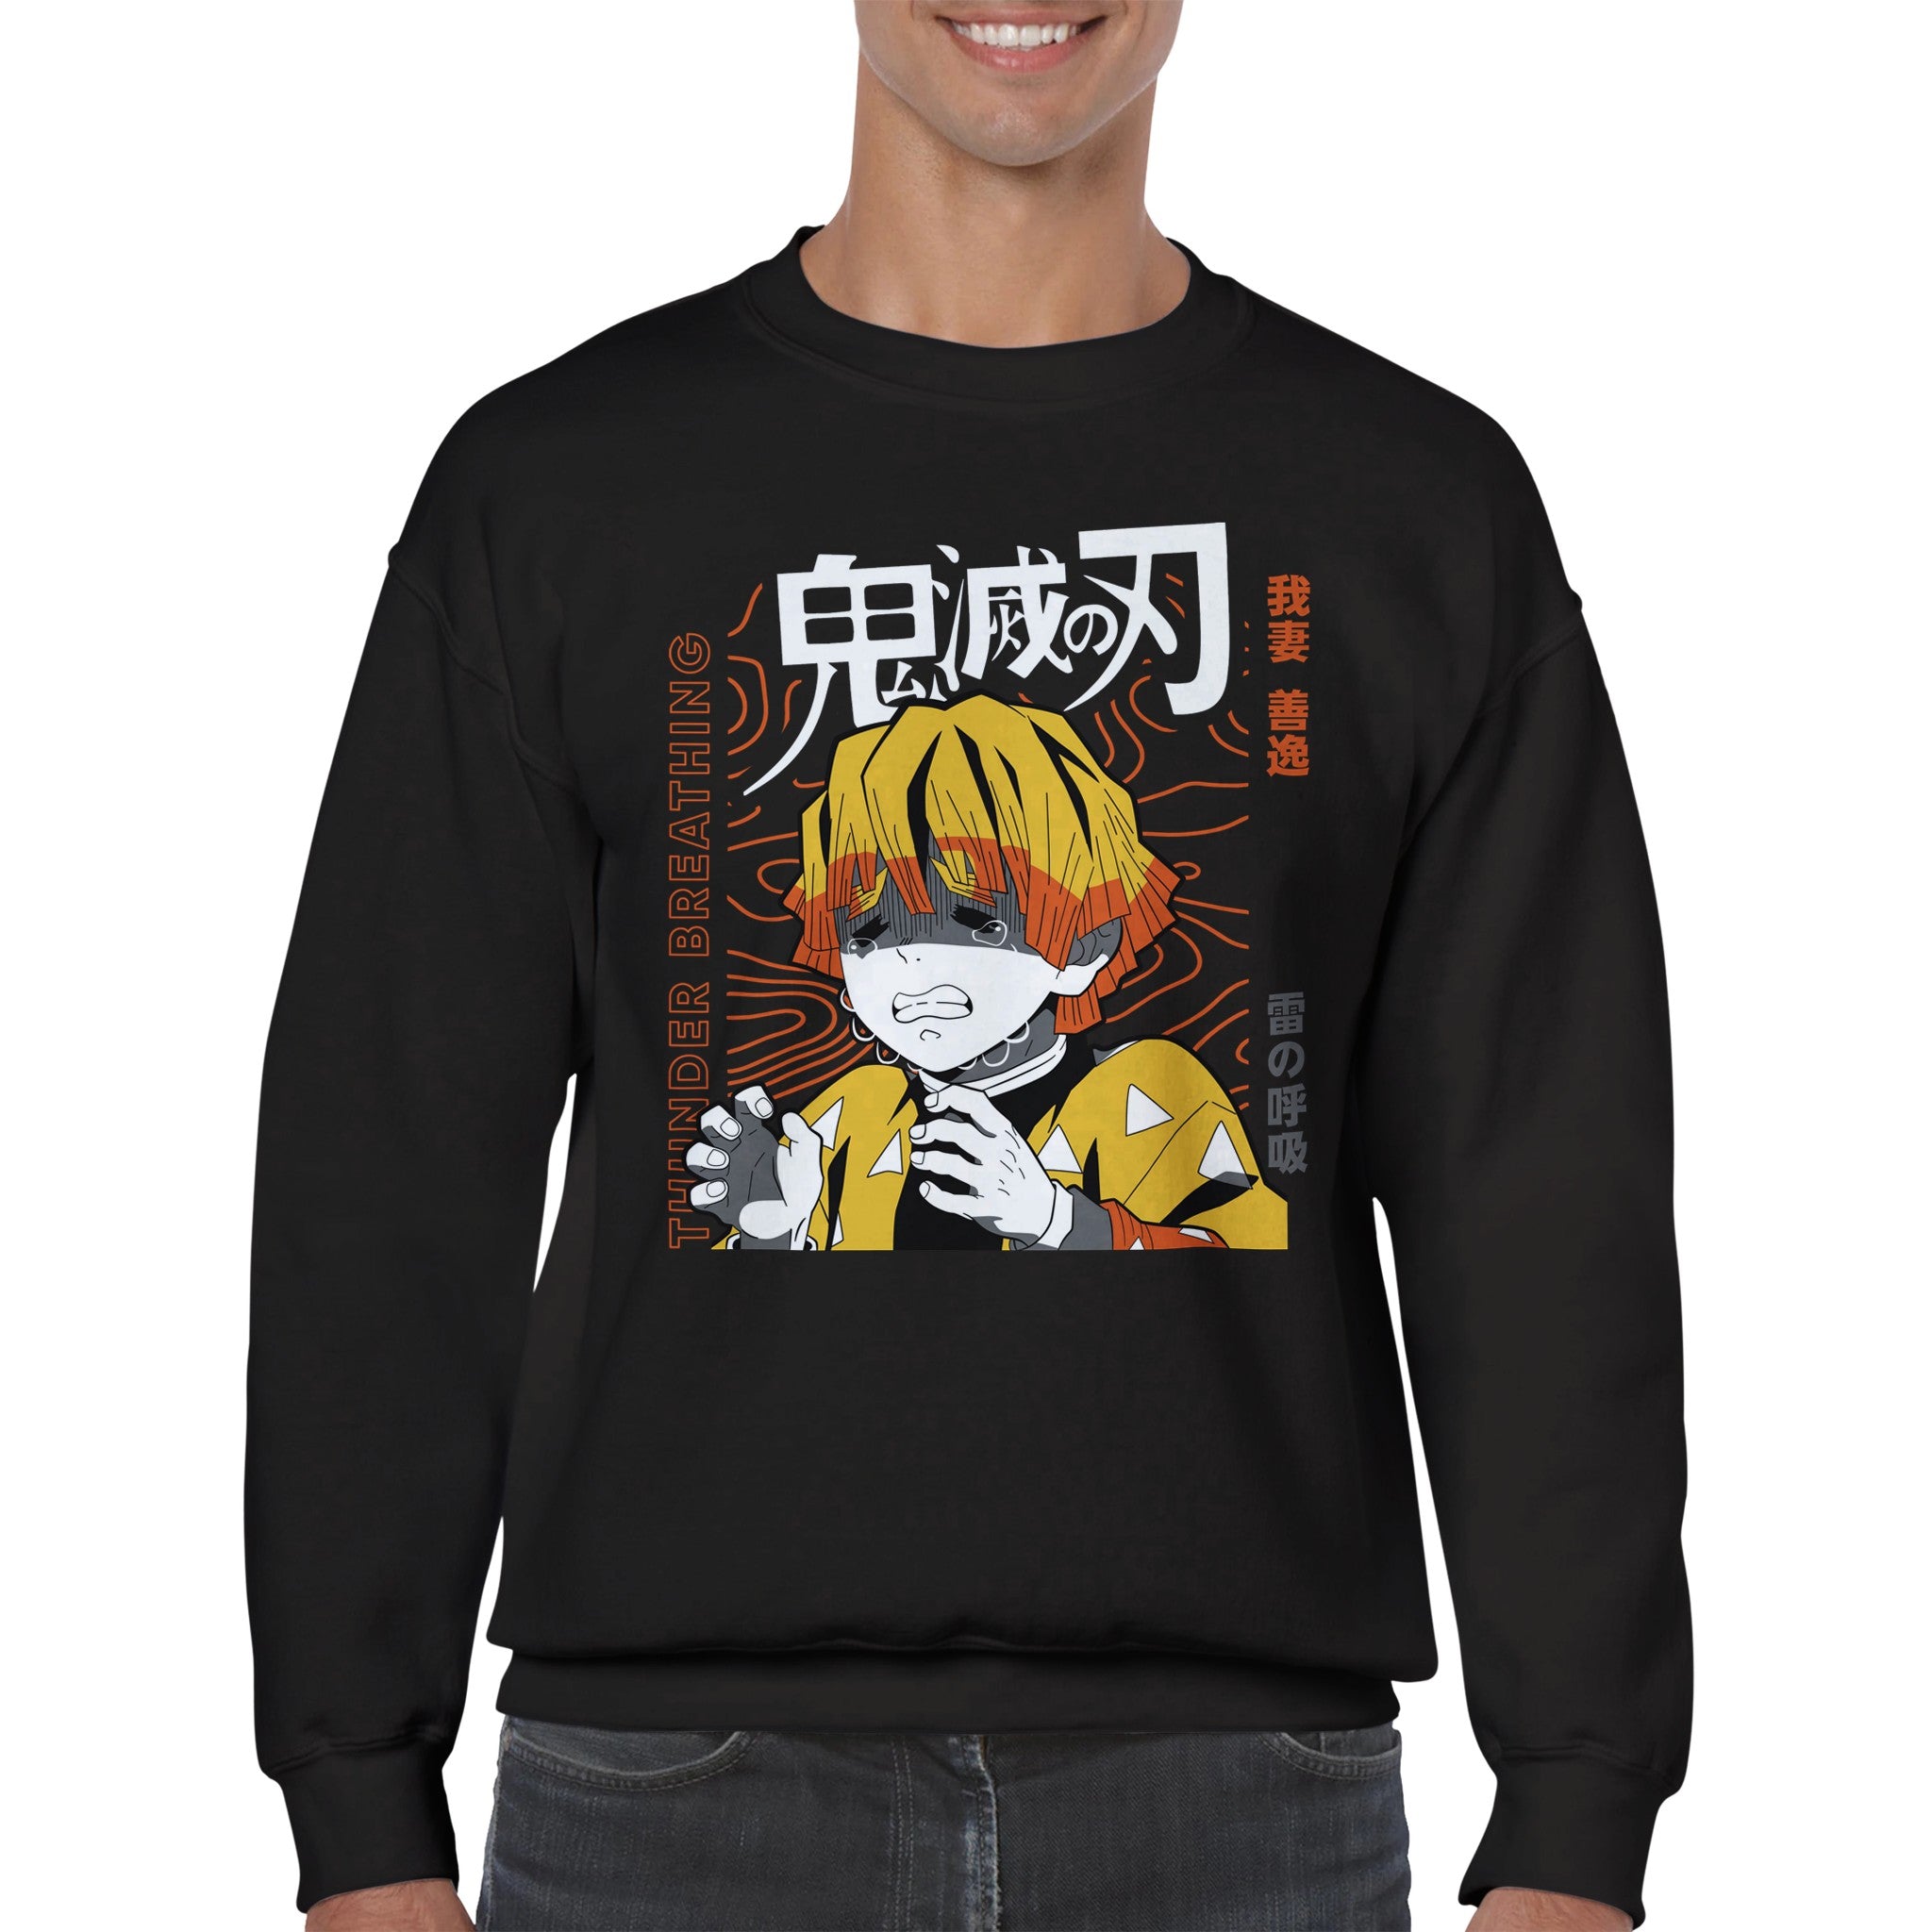 shop and buy demon slayer anime clothing zenitsu sweatshirt/longsleeve/jumper